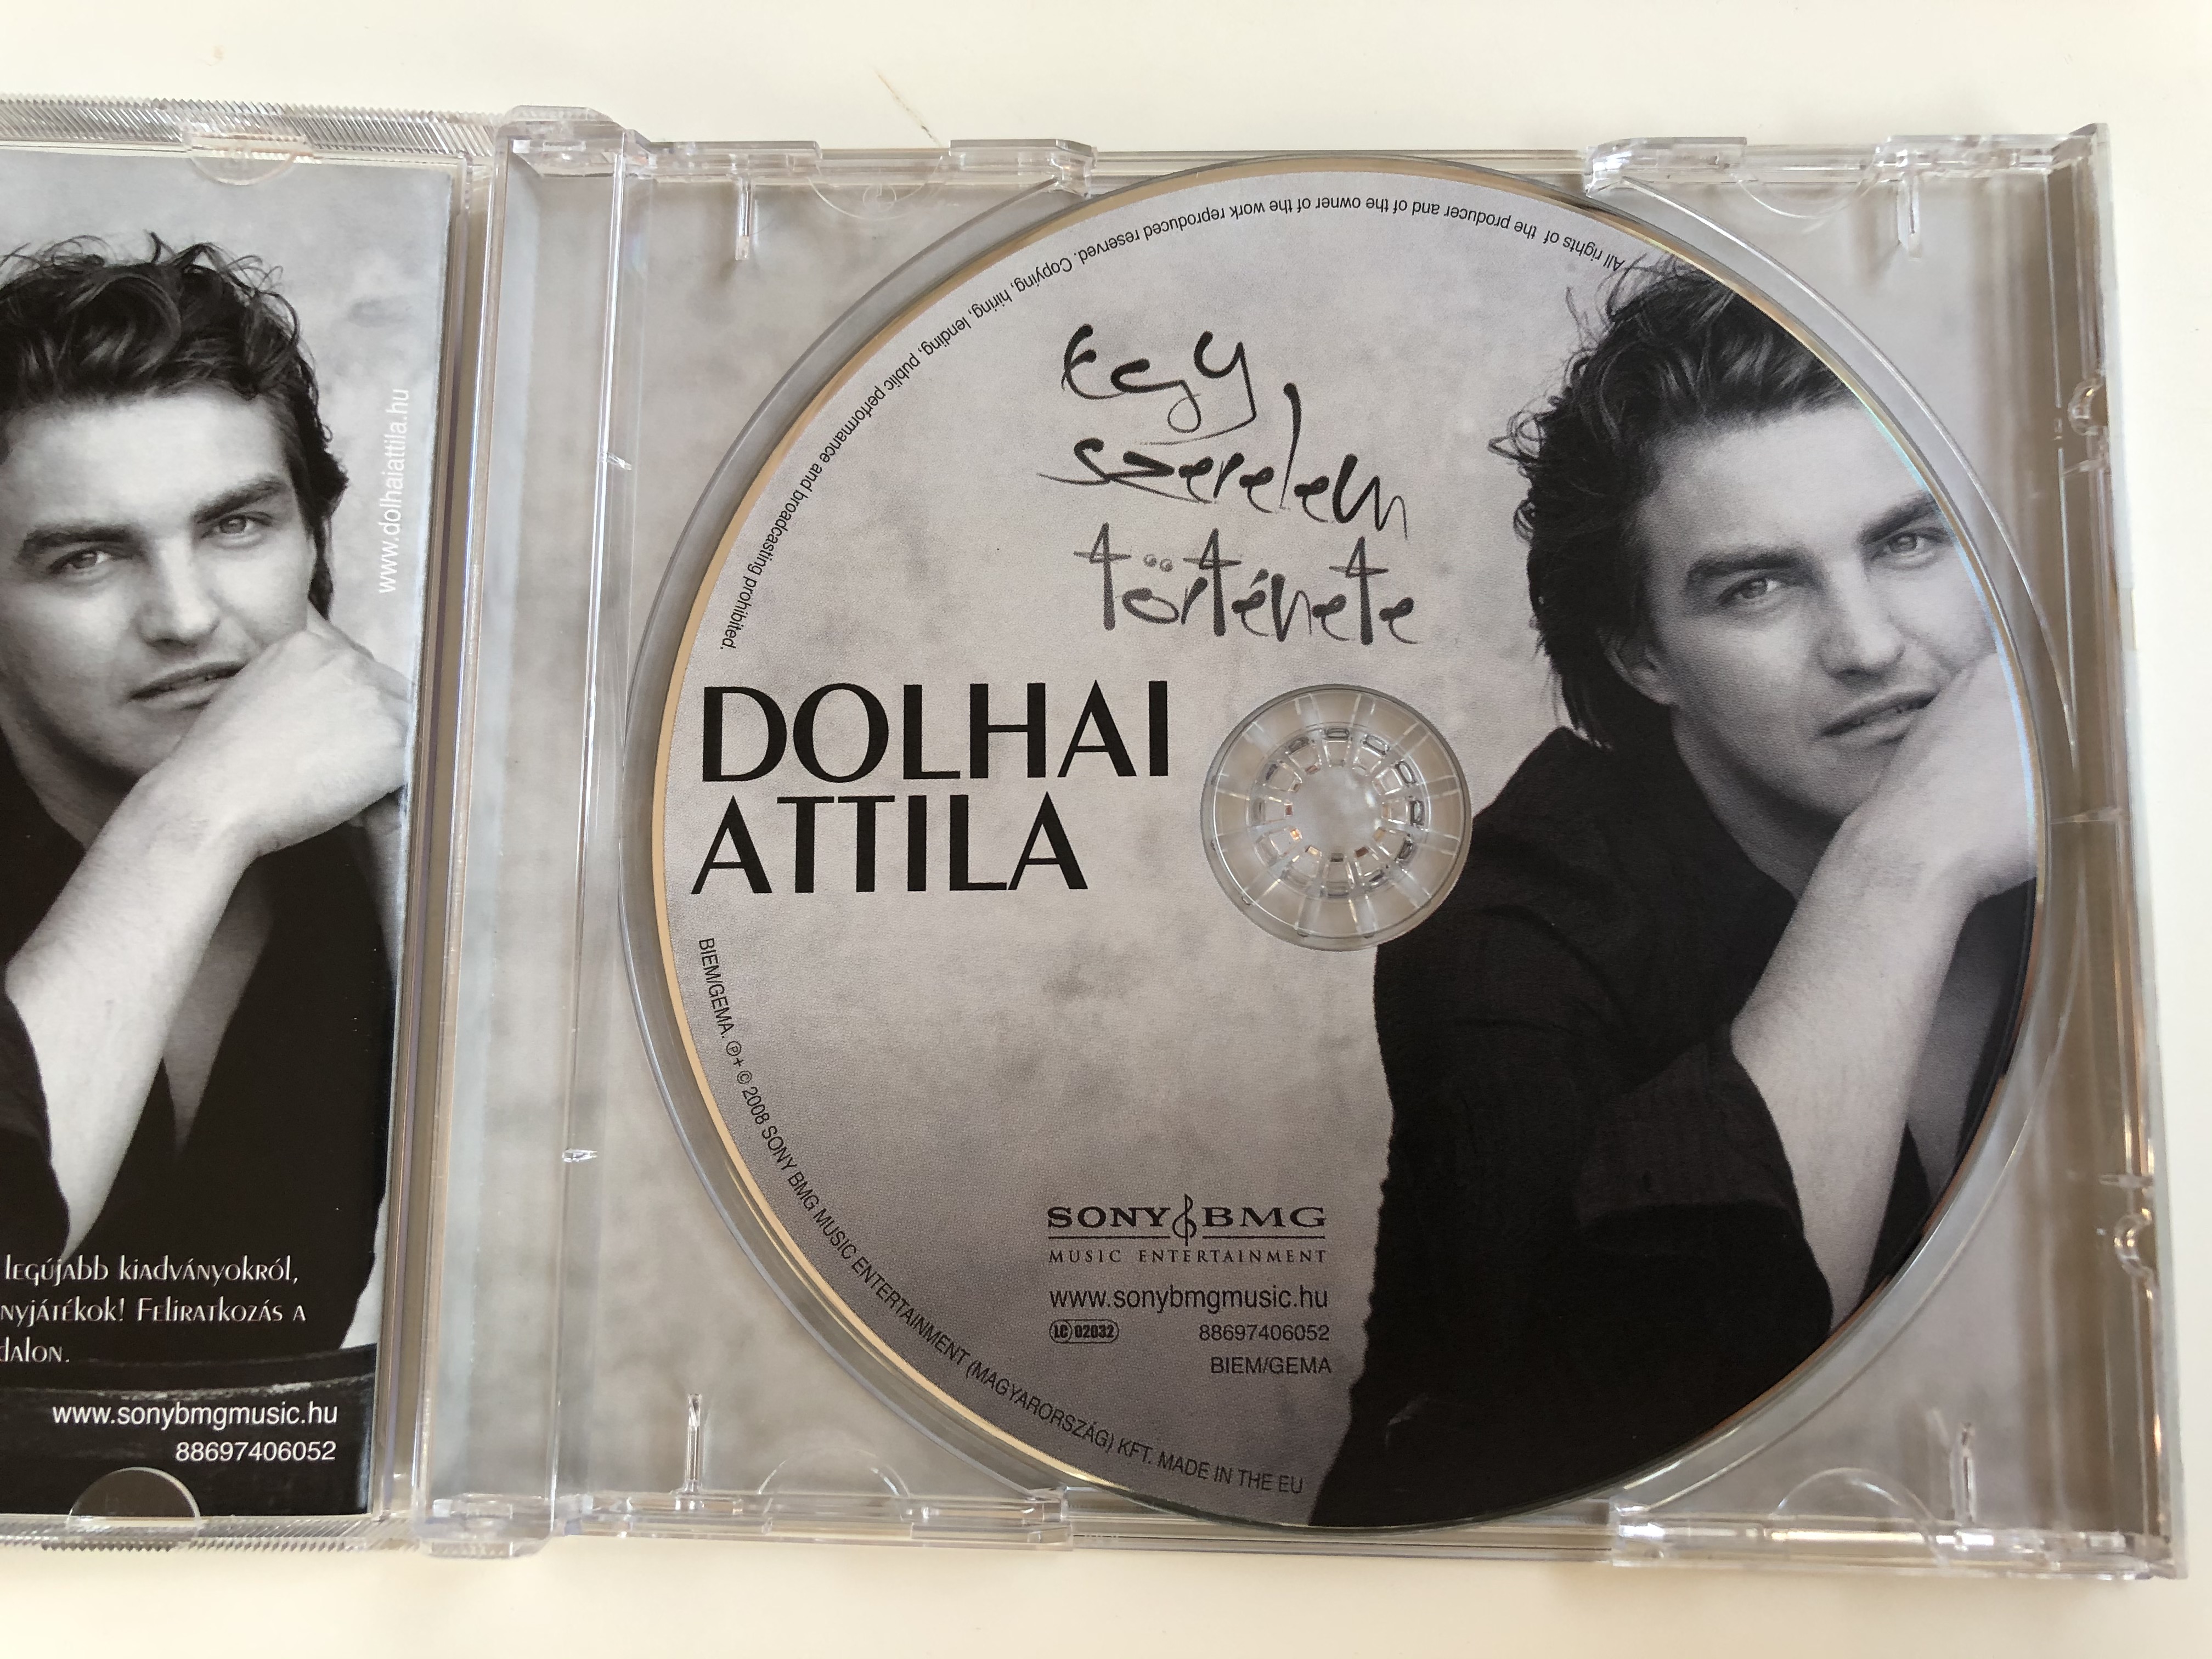 egy-szerelem-t-rt-nete-dolhai-attila-sony-bmg-music-entertainment-audio-cd-2008-88697406052-4-.jpg